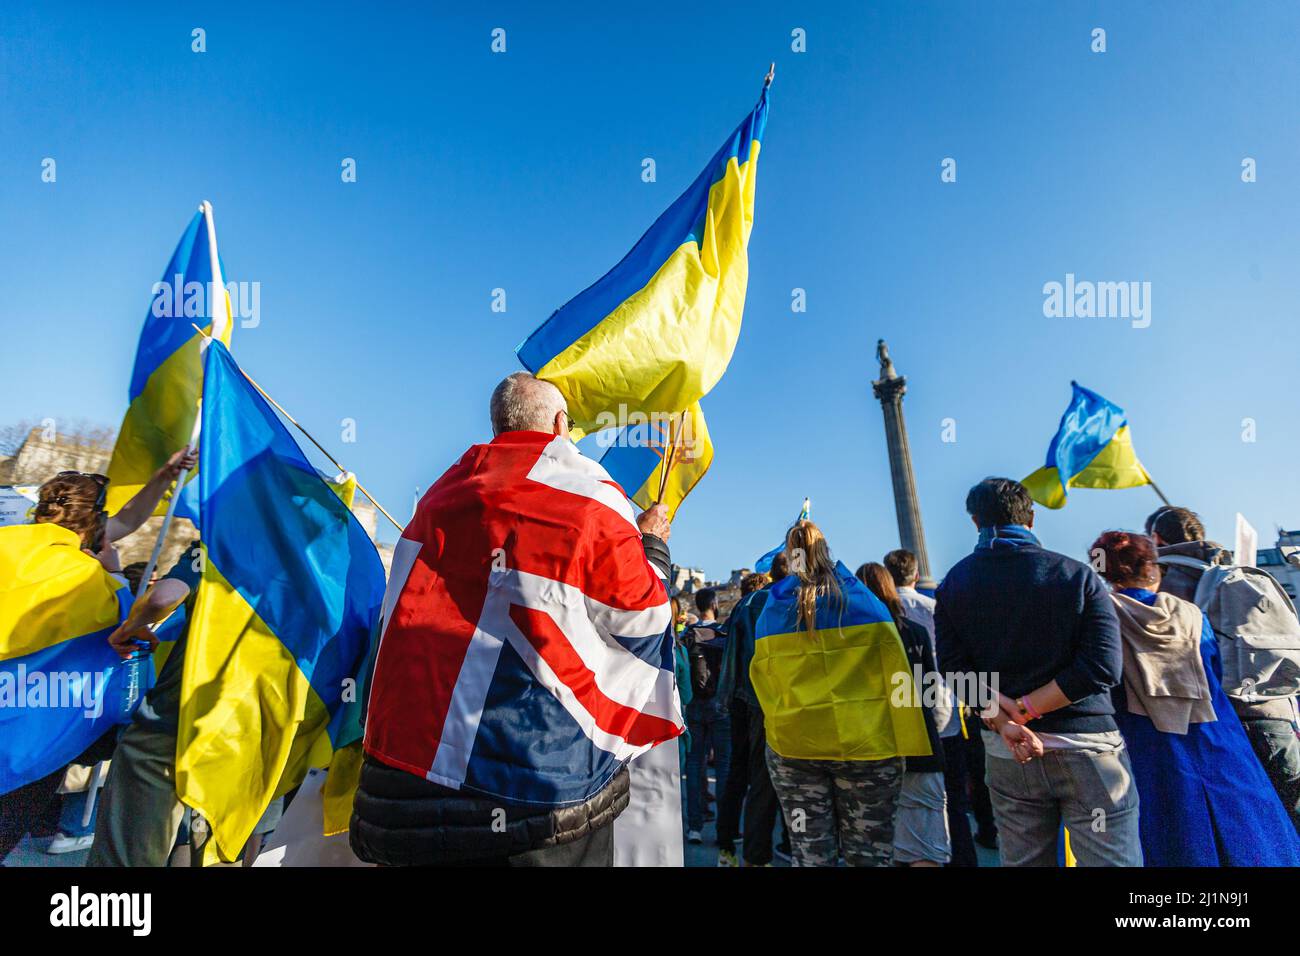 Un drapeau syndical parmi plusieurs drapeaux ukrainiens protestant à Trafalgar Square contre l'invasion russe de l'Ukraine. Banque D'Images